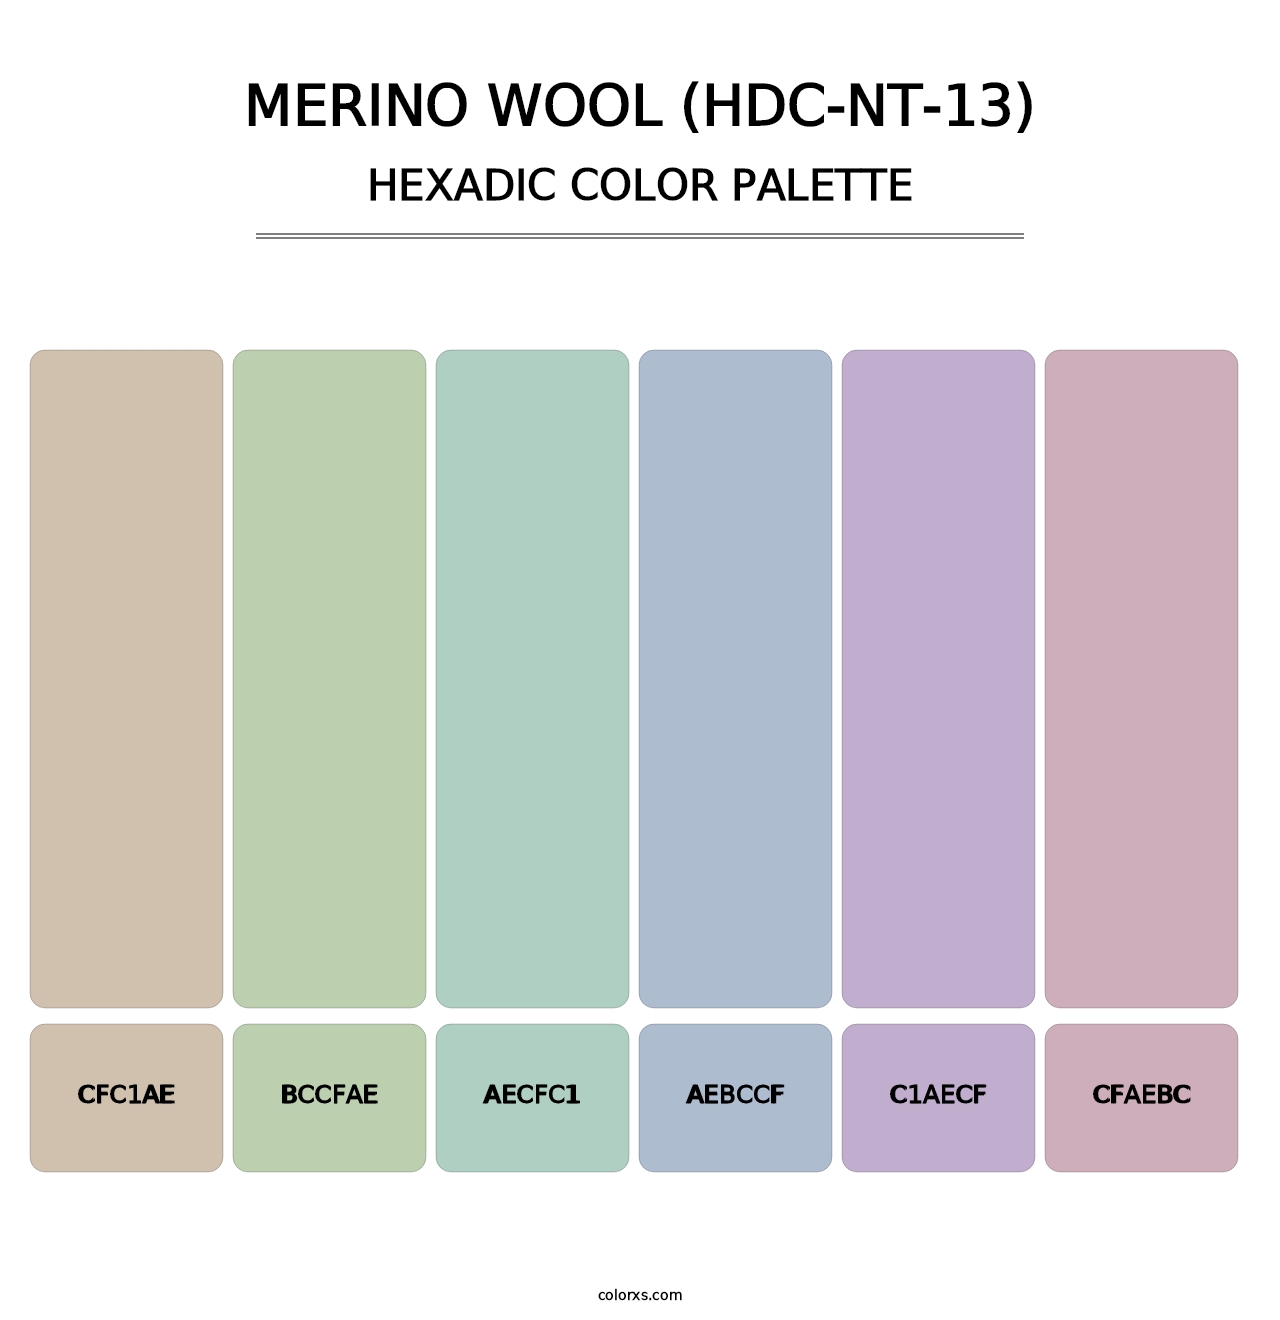 Merino Wool (HDC-NT-13) - Hexadic Color Palette